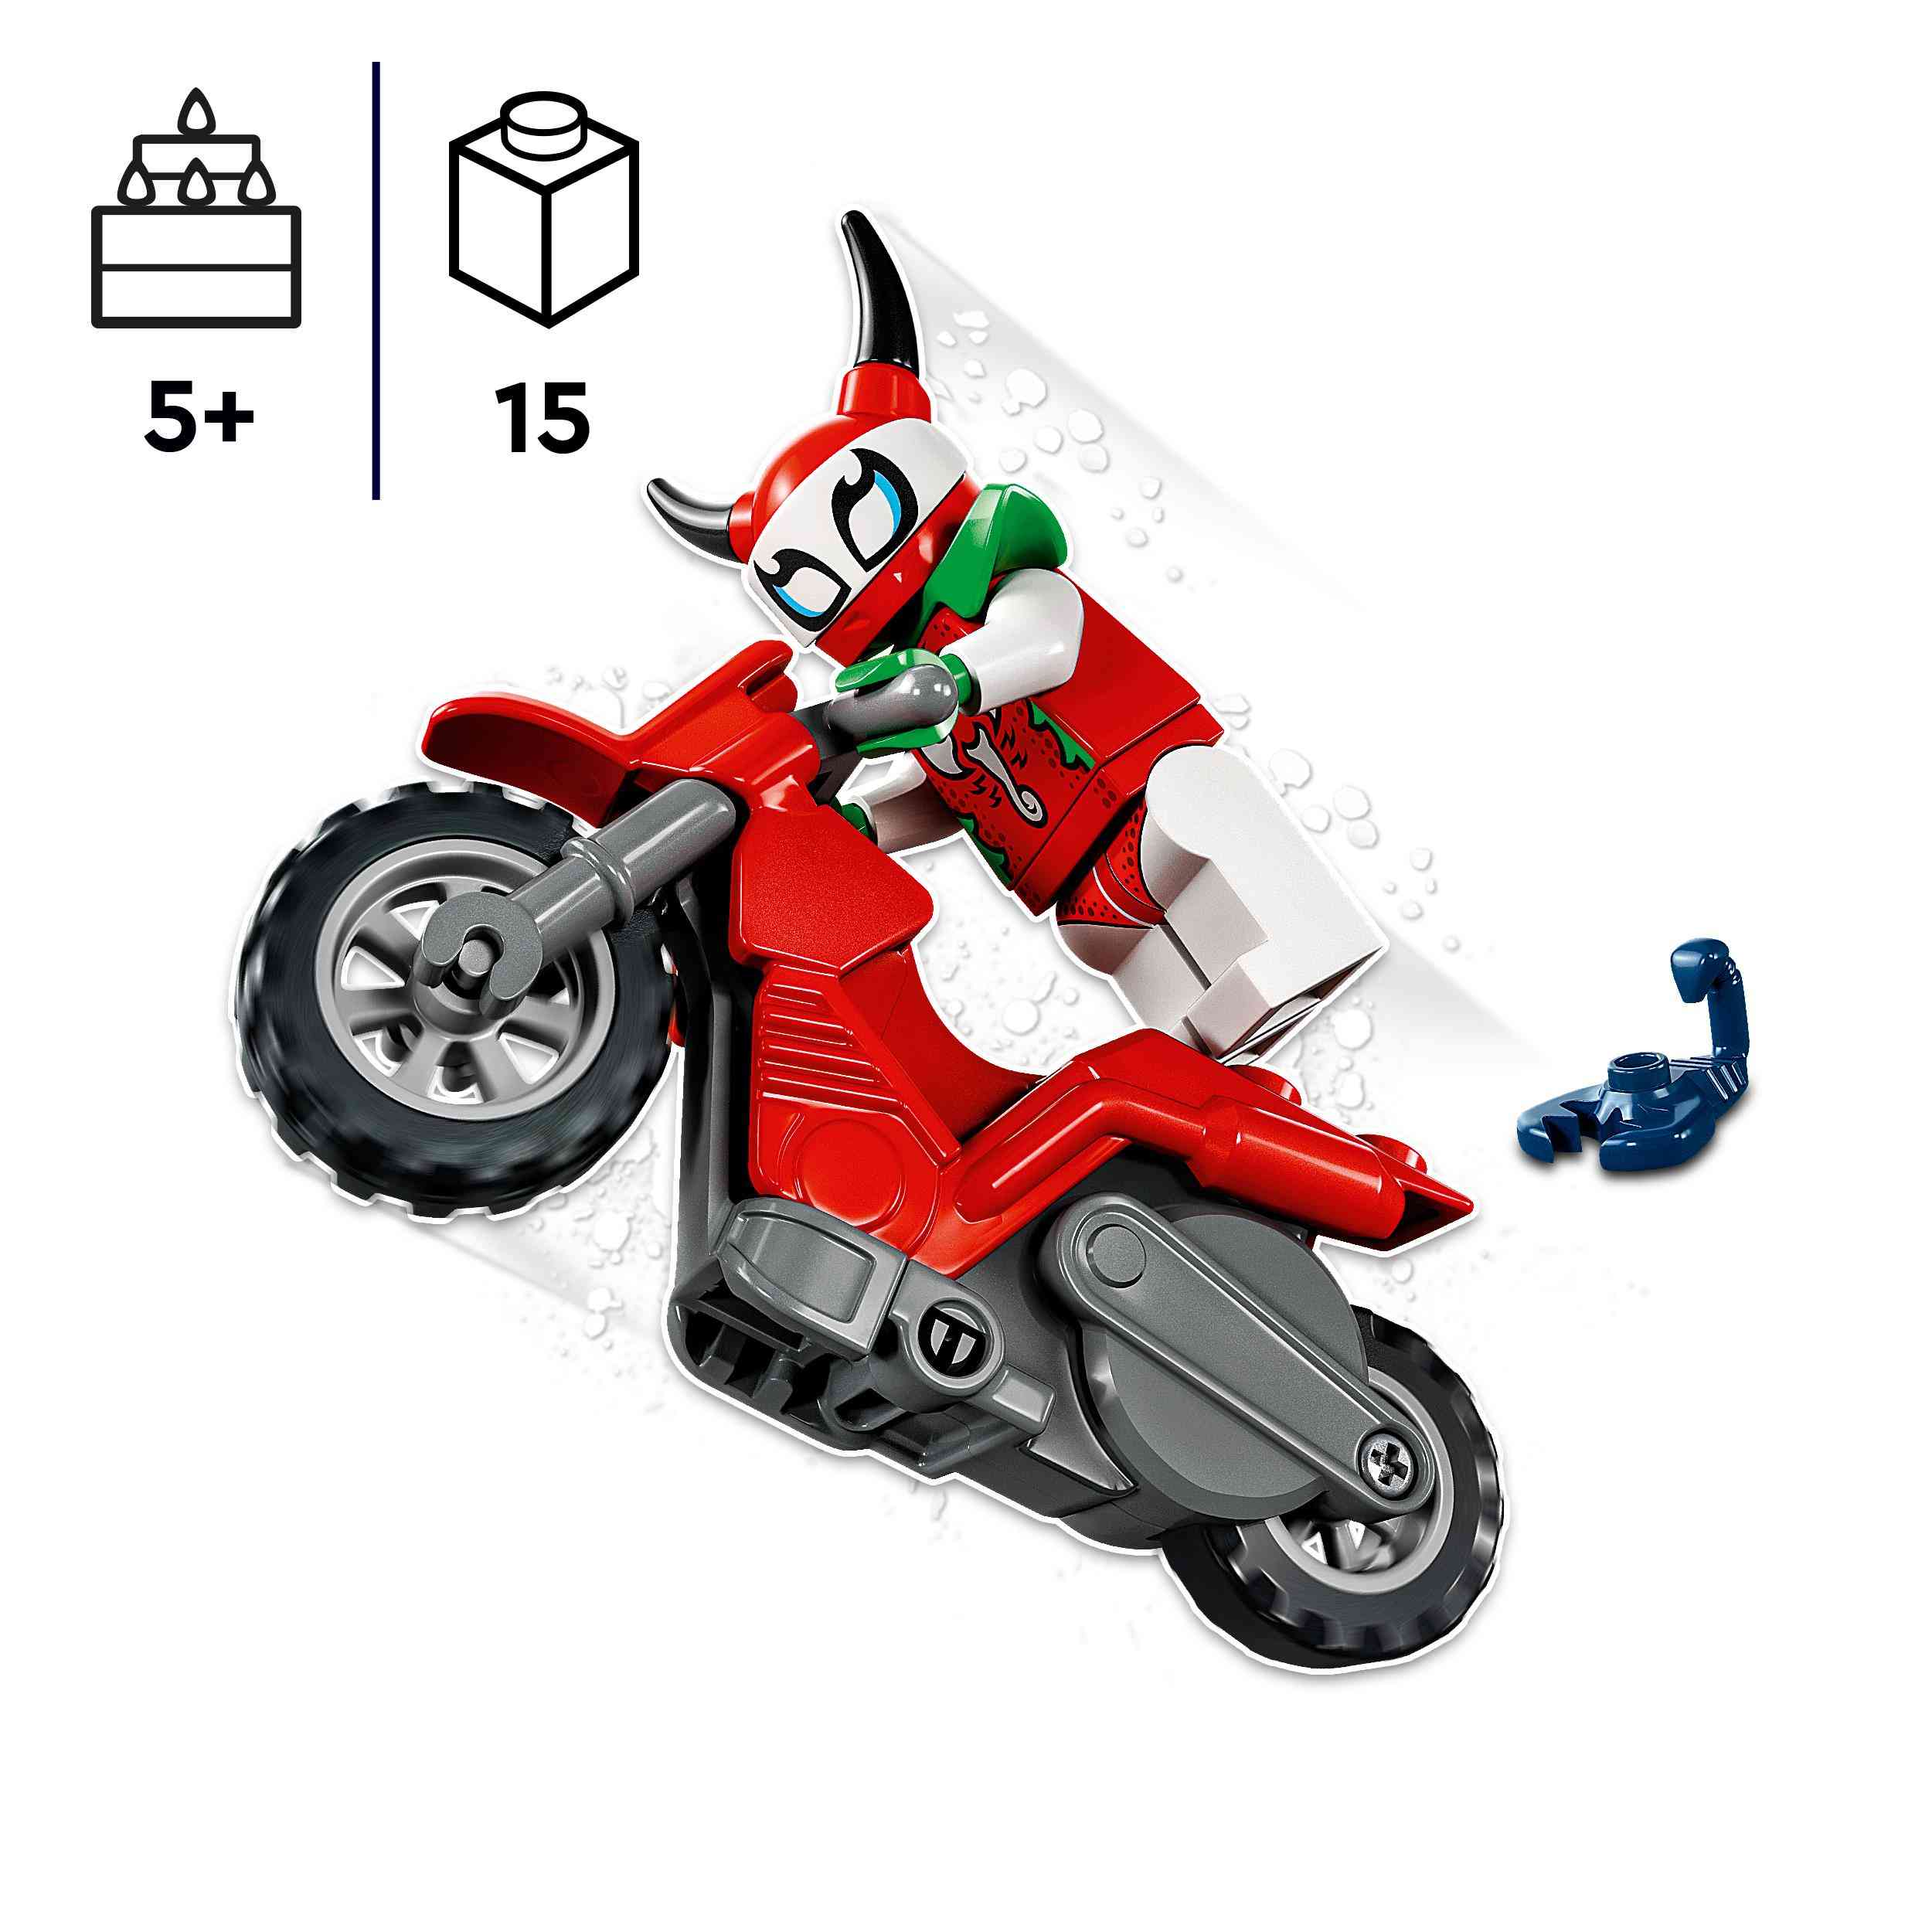 Lego city stuntz 60332 stunt bike​ scorpione spericolato, moto giocattolo, giochi per bambini dai 5 anni in su, idea regalo - LEGO CITY, LEGO CITY STUNTZ, Lego